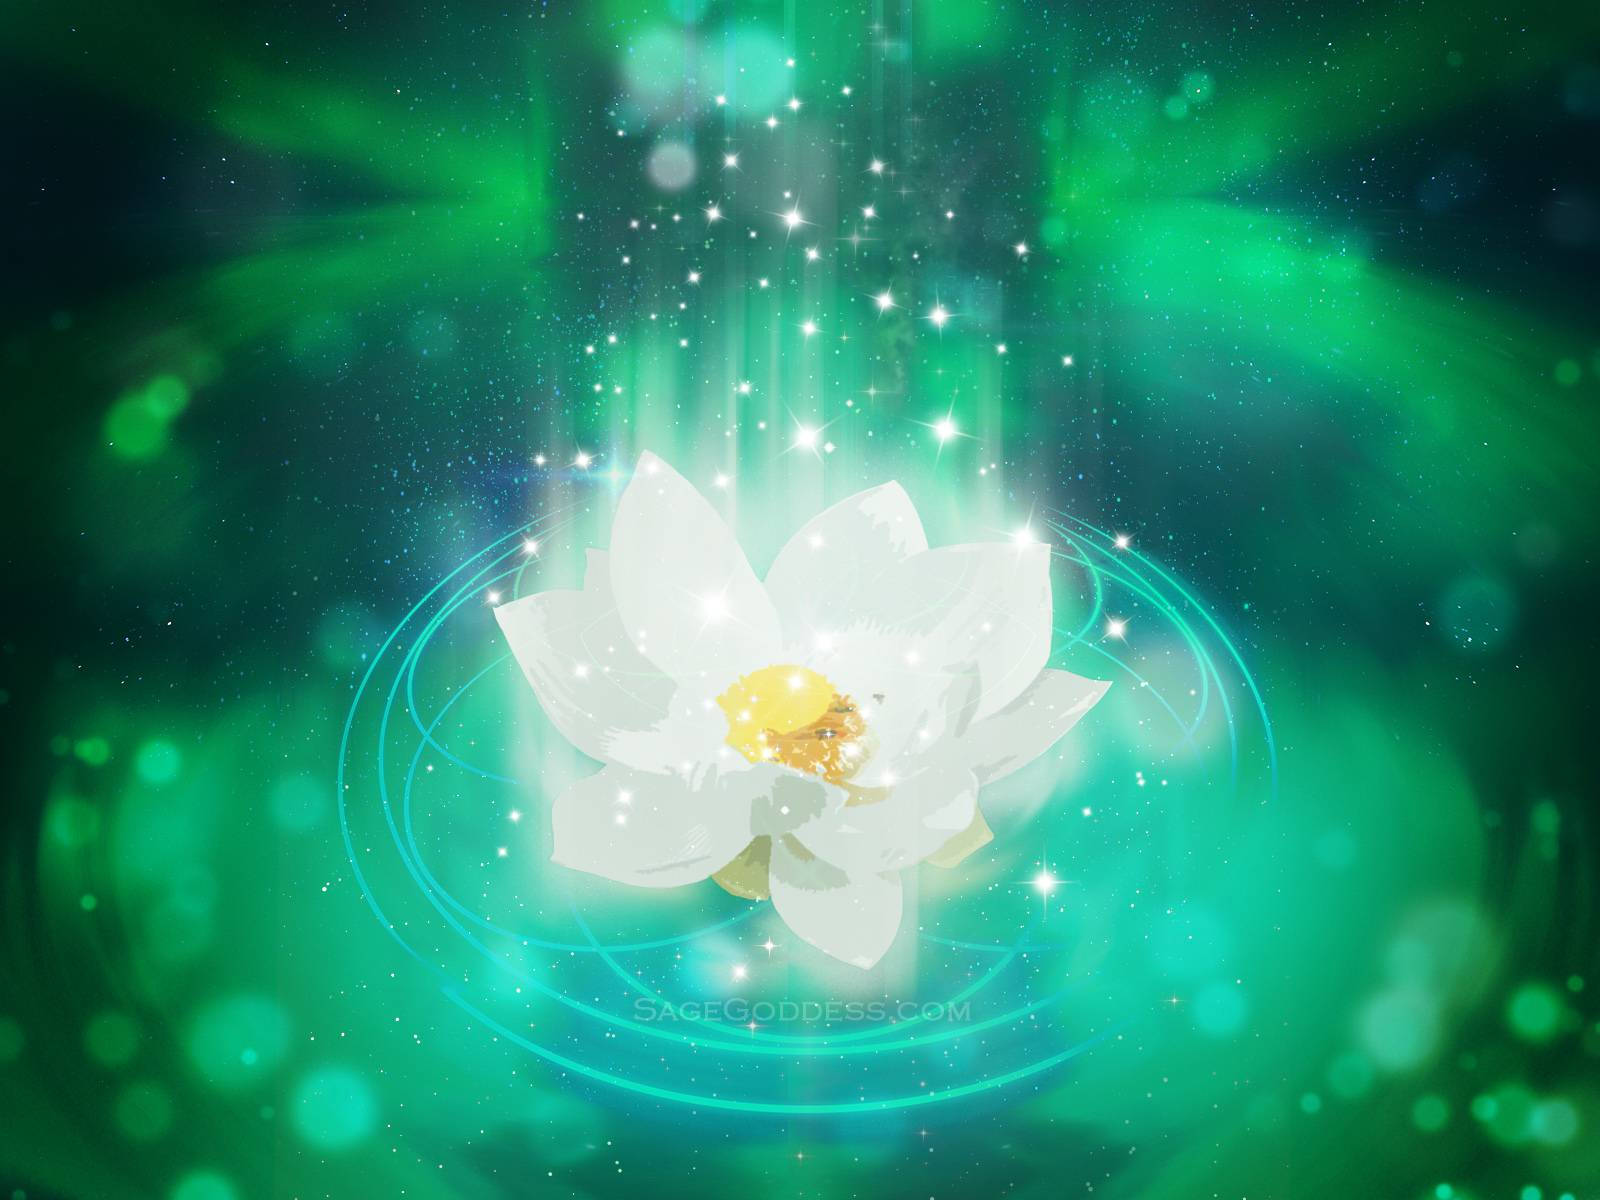 Sage Goddess Lotus Flower Wallpaper